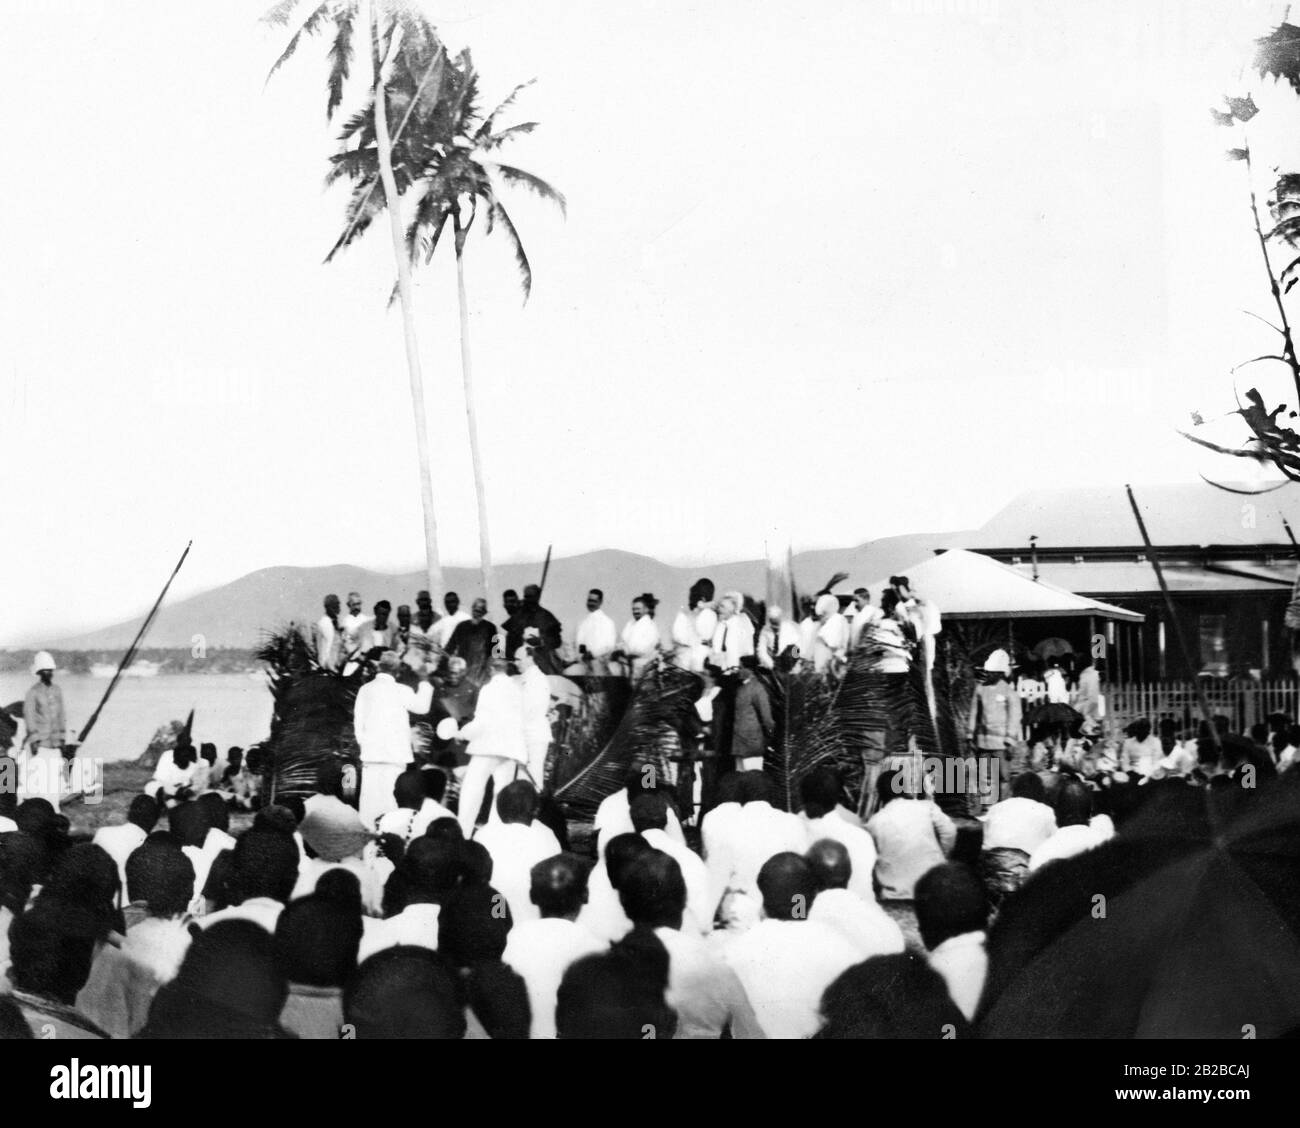 Le chef des Samoa Mataafa prêtera serment d'allégeance en présence du premier gouverneur allemand Wilhelm Solf, des fonctionnaires allemands, de nombreux missionnaires et chefs. Banque D'Images